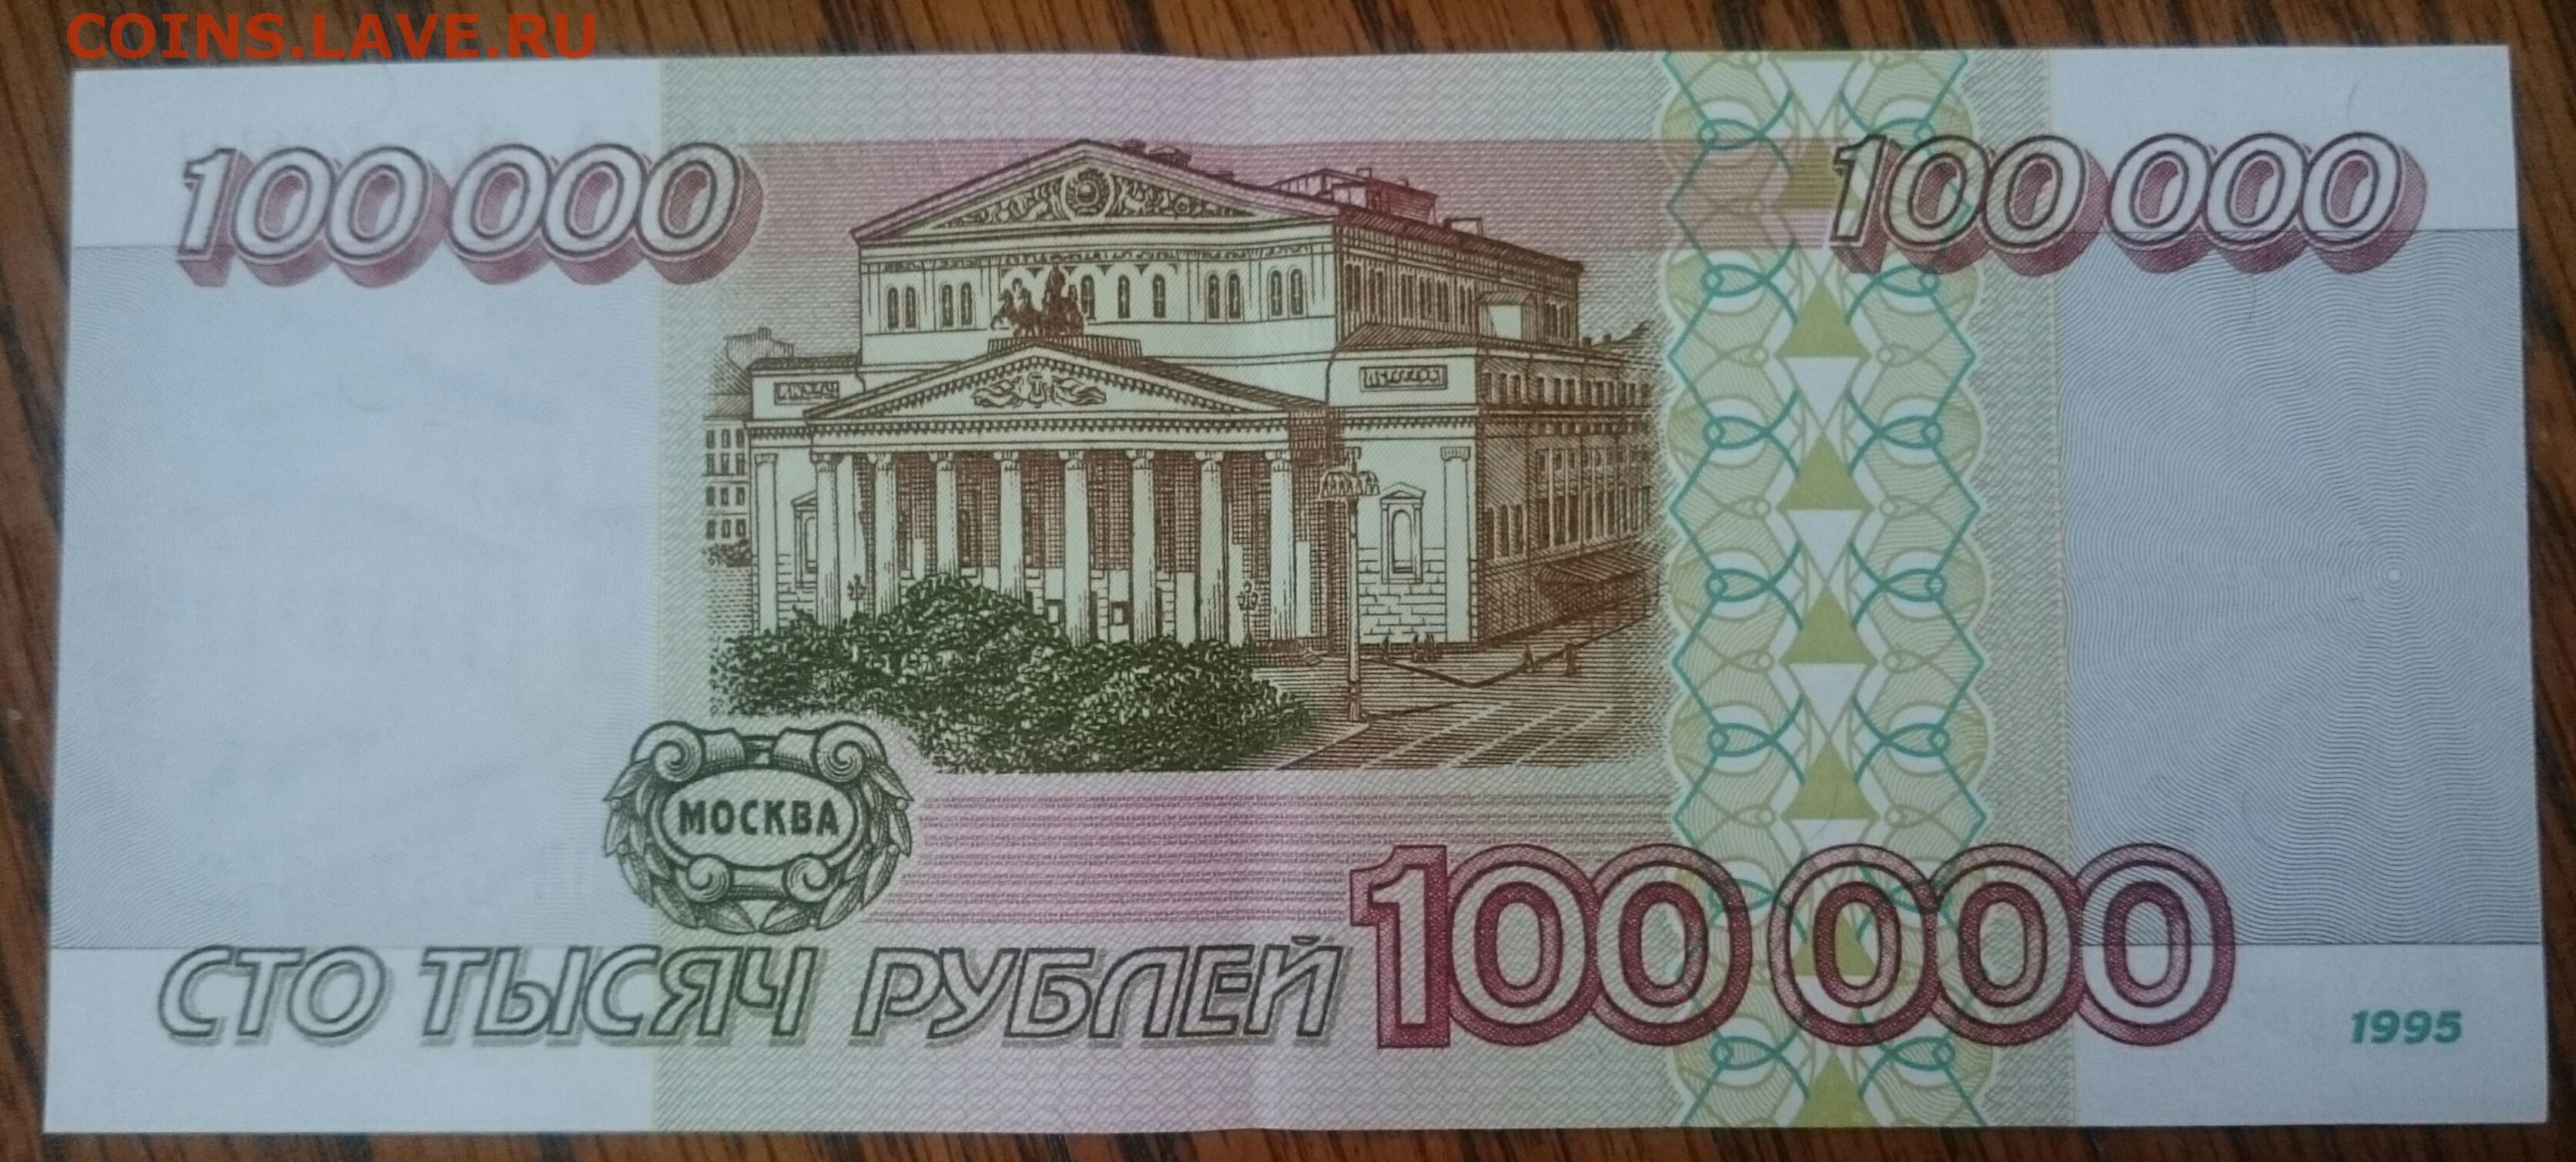 80 000 в рублях. 100 000 Рублей 1995 года. 100 Рублей 1995 года. Картинка 100 000 рублей. 100 000 Рублей купюра.